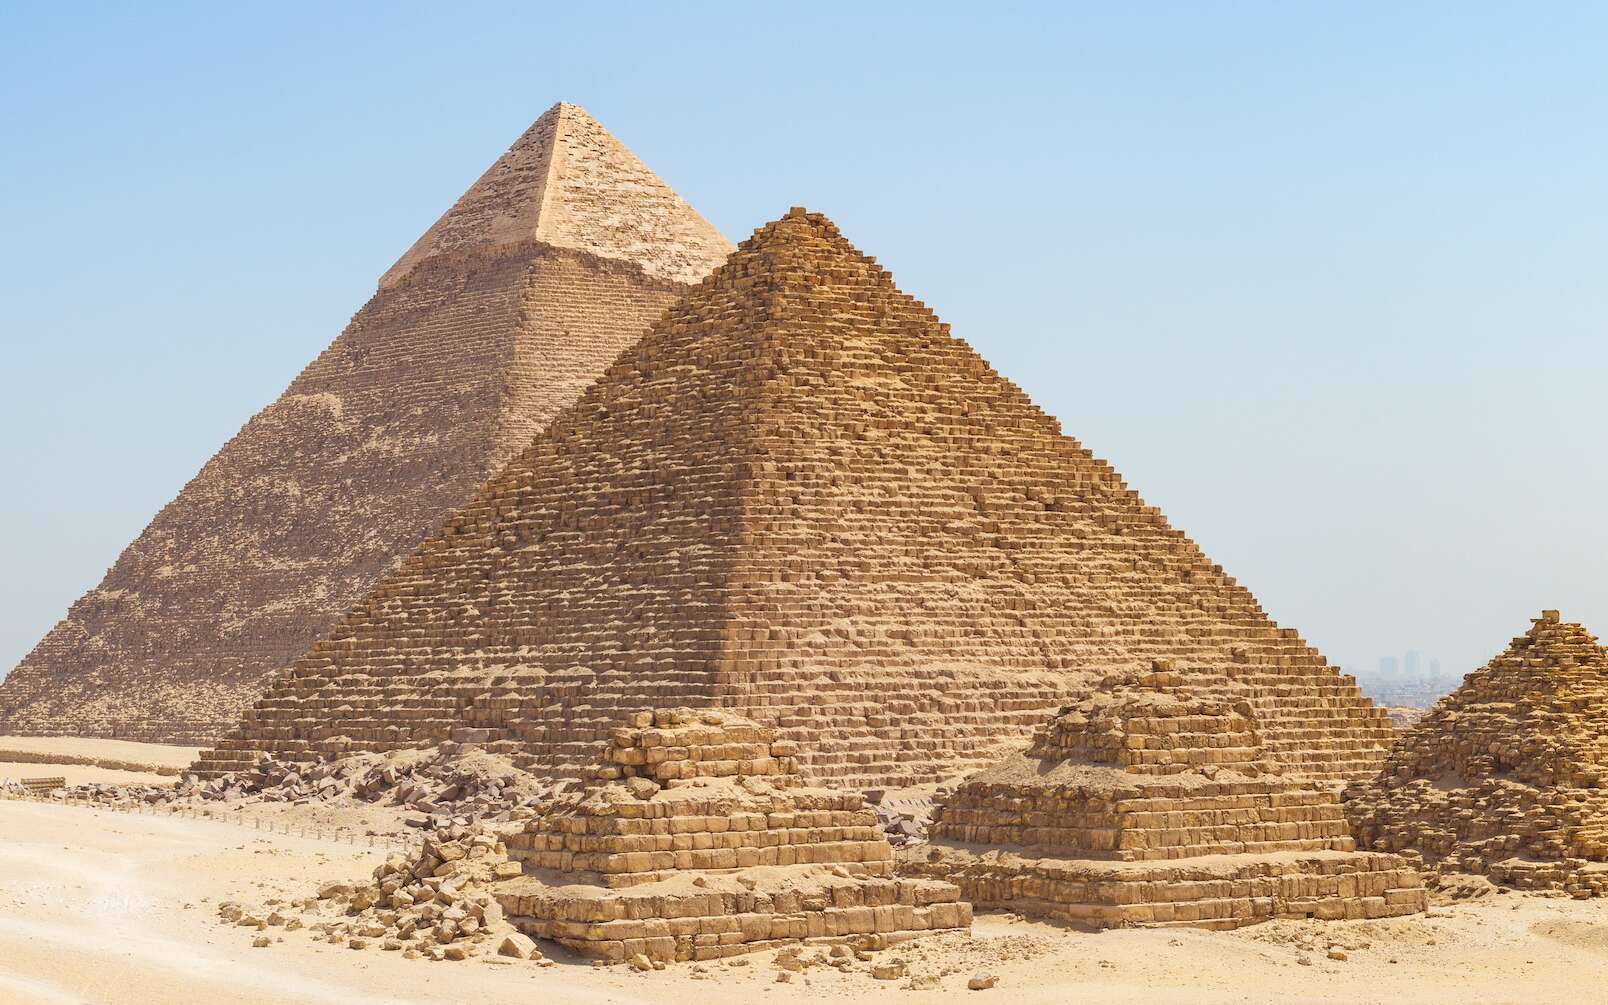 Le « projet du siècle » de recouvrir une pyramide d'Égypte de granit provoque un tollé !